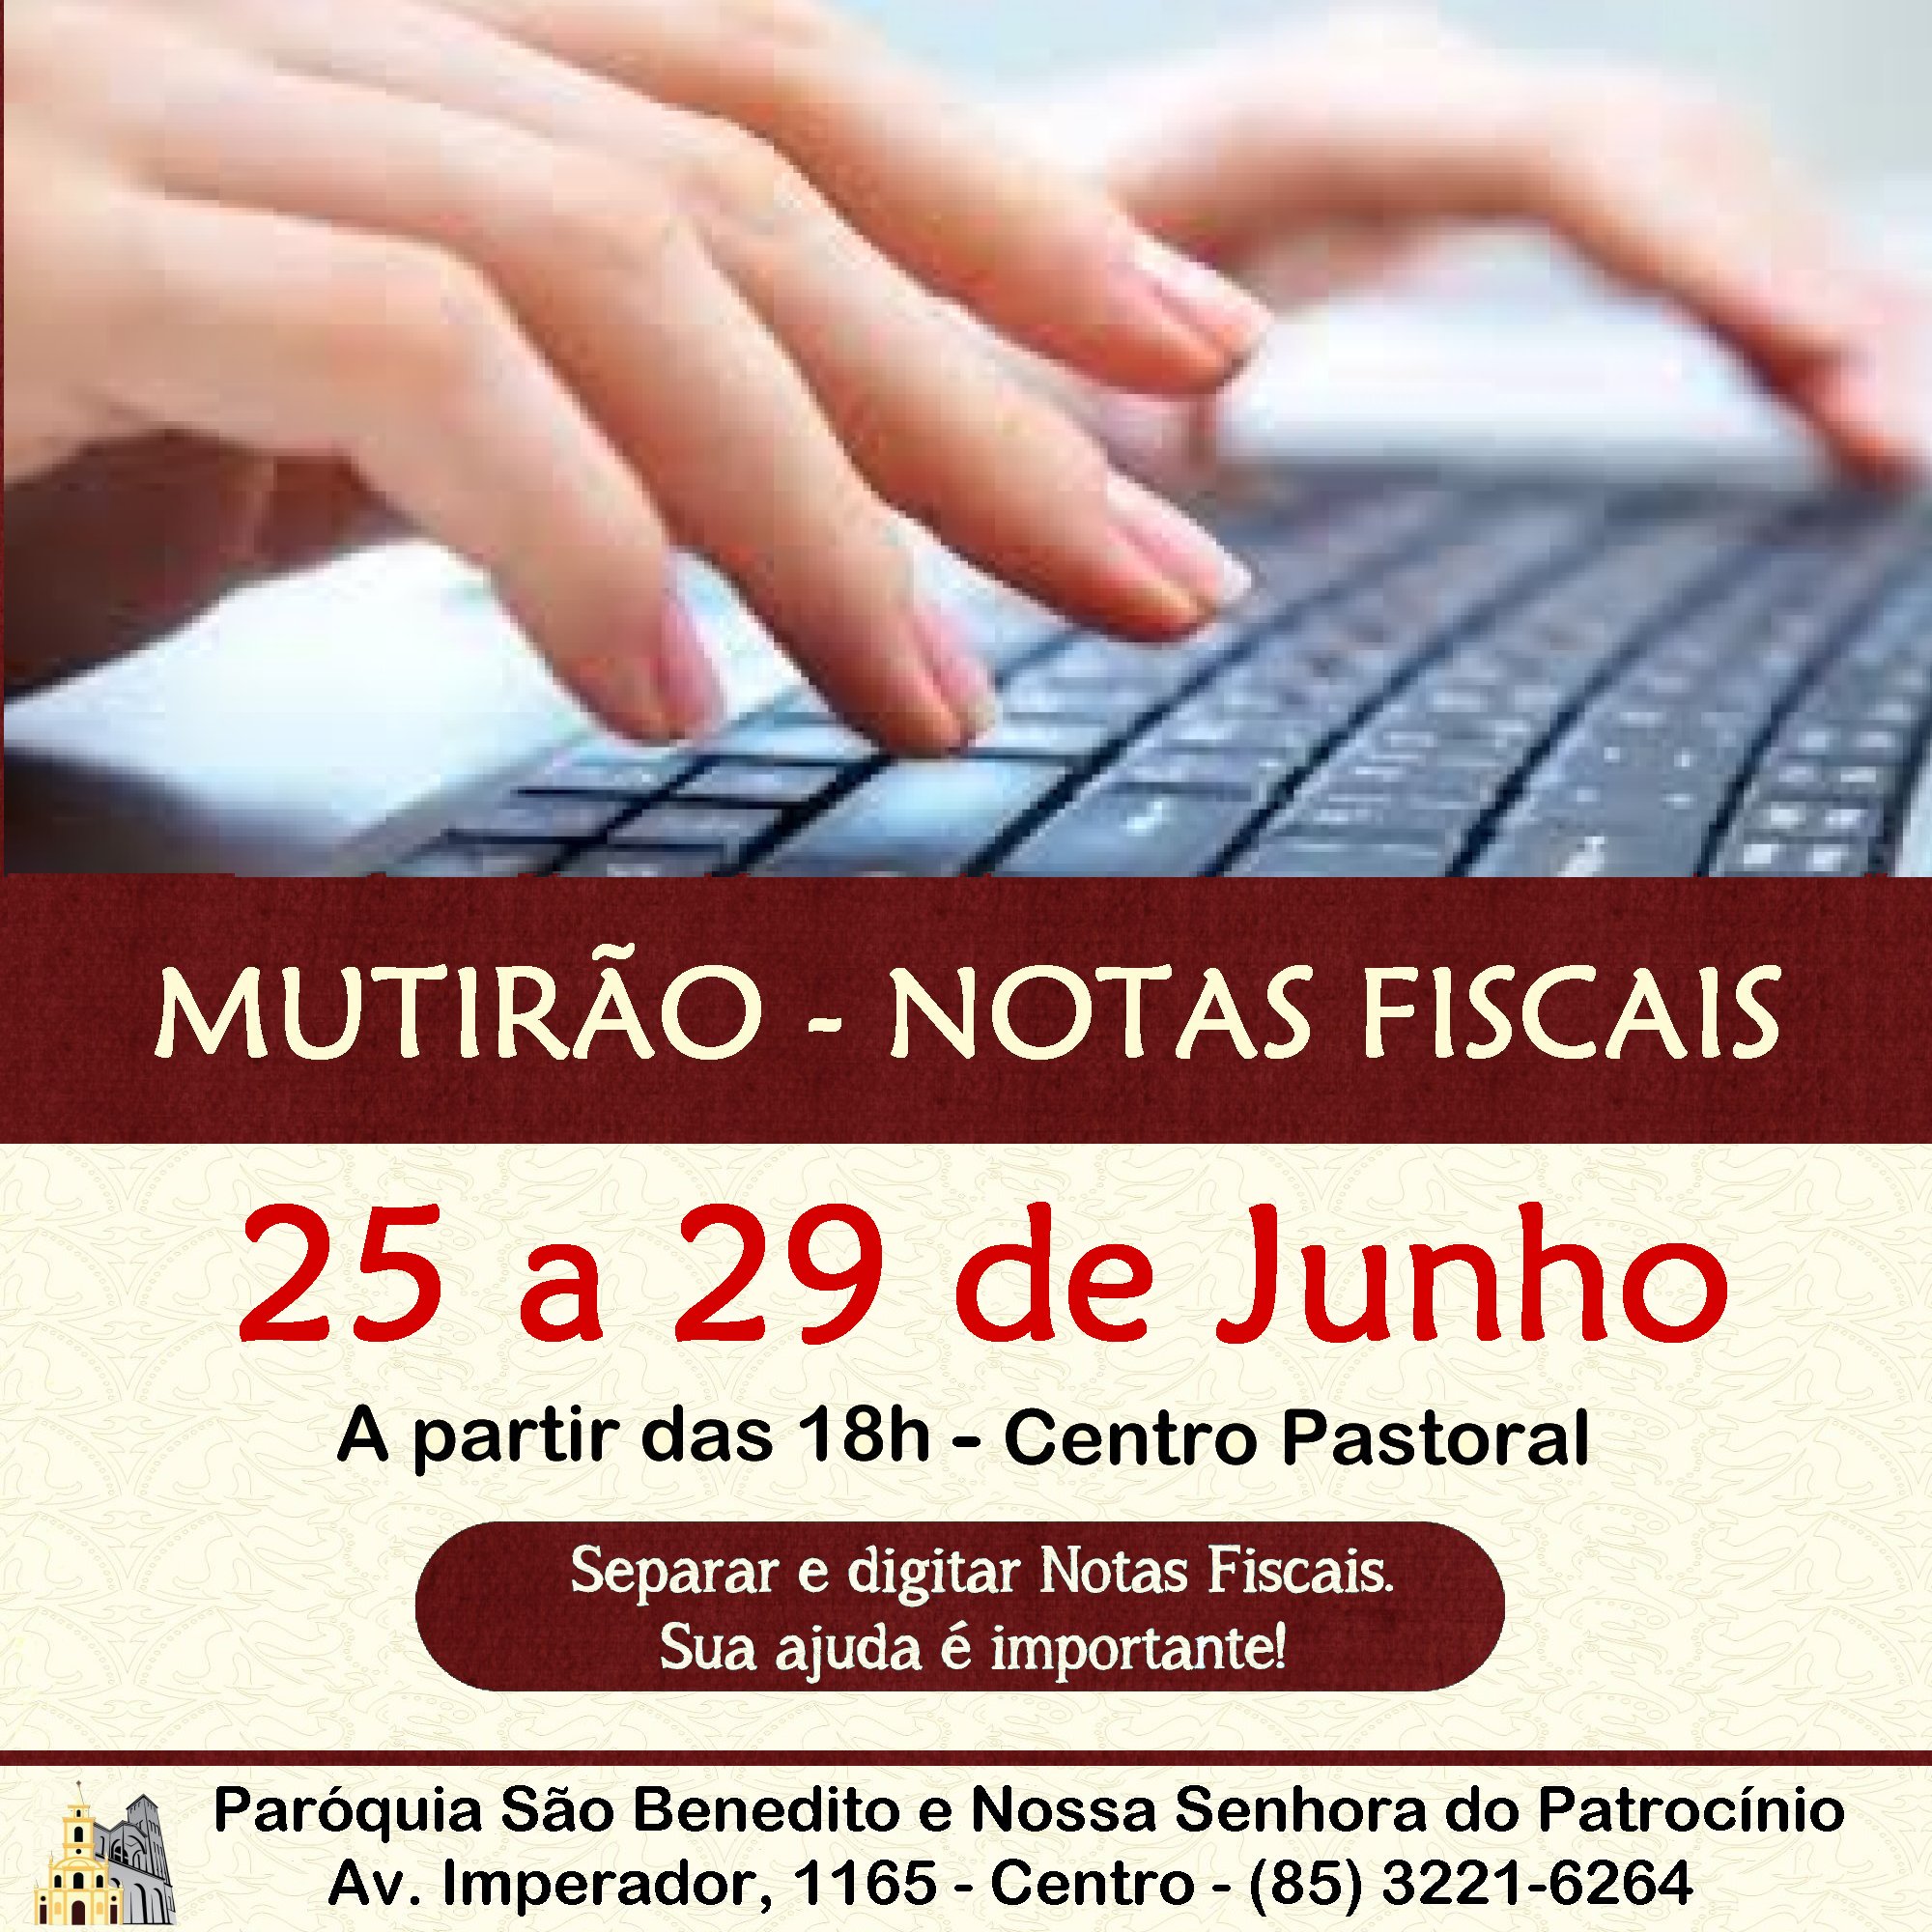 Mutirão Solidário para triagem e digitação de Notas Fiscais de 25 a 29/06. Participe!